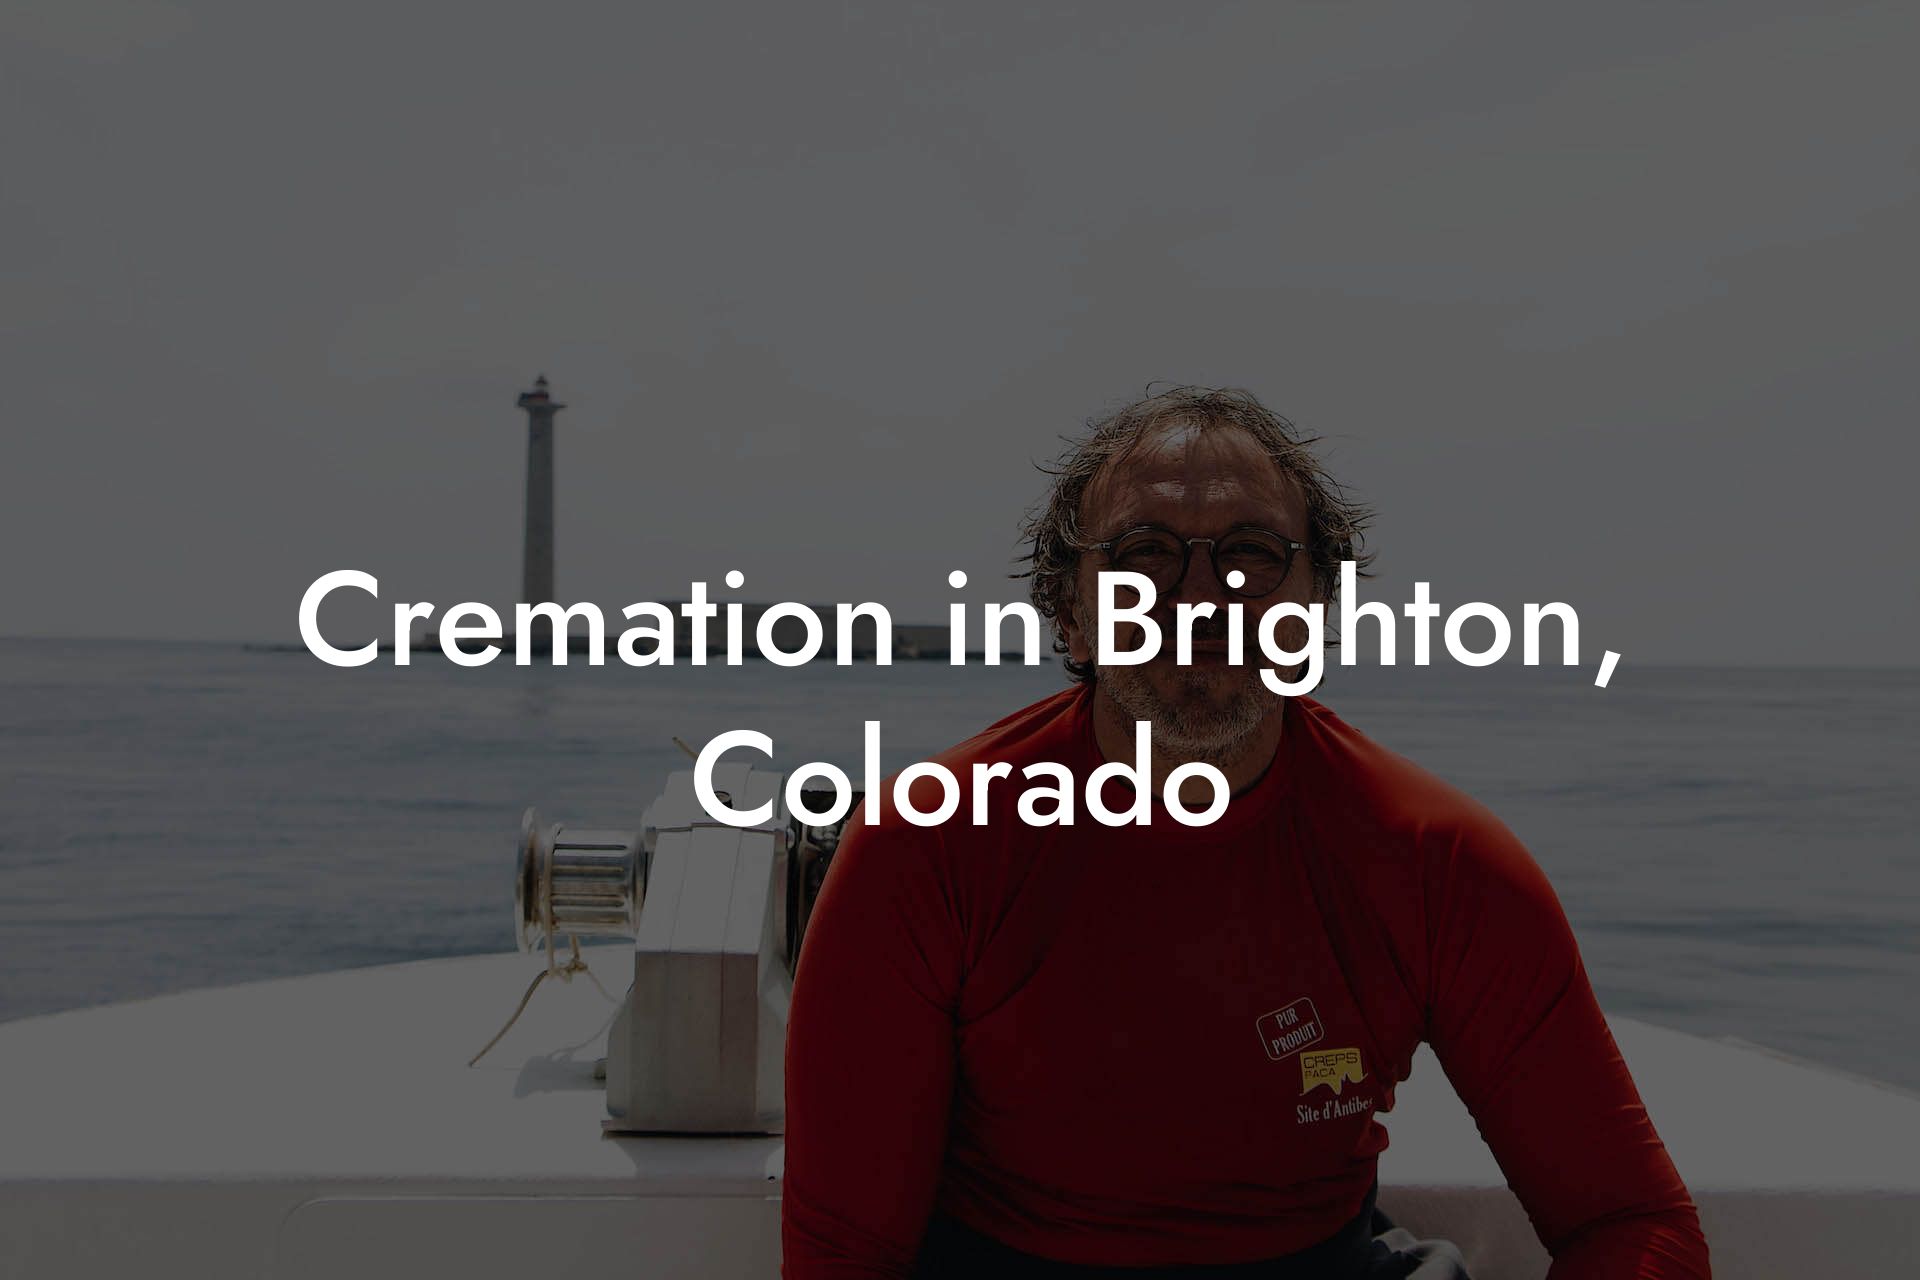 Cremation in Brighton, Colorado